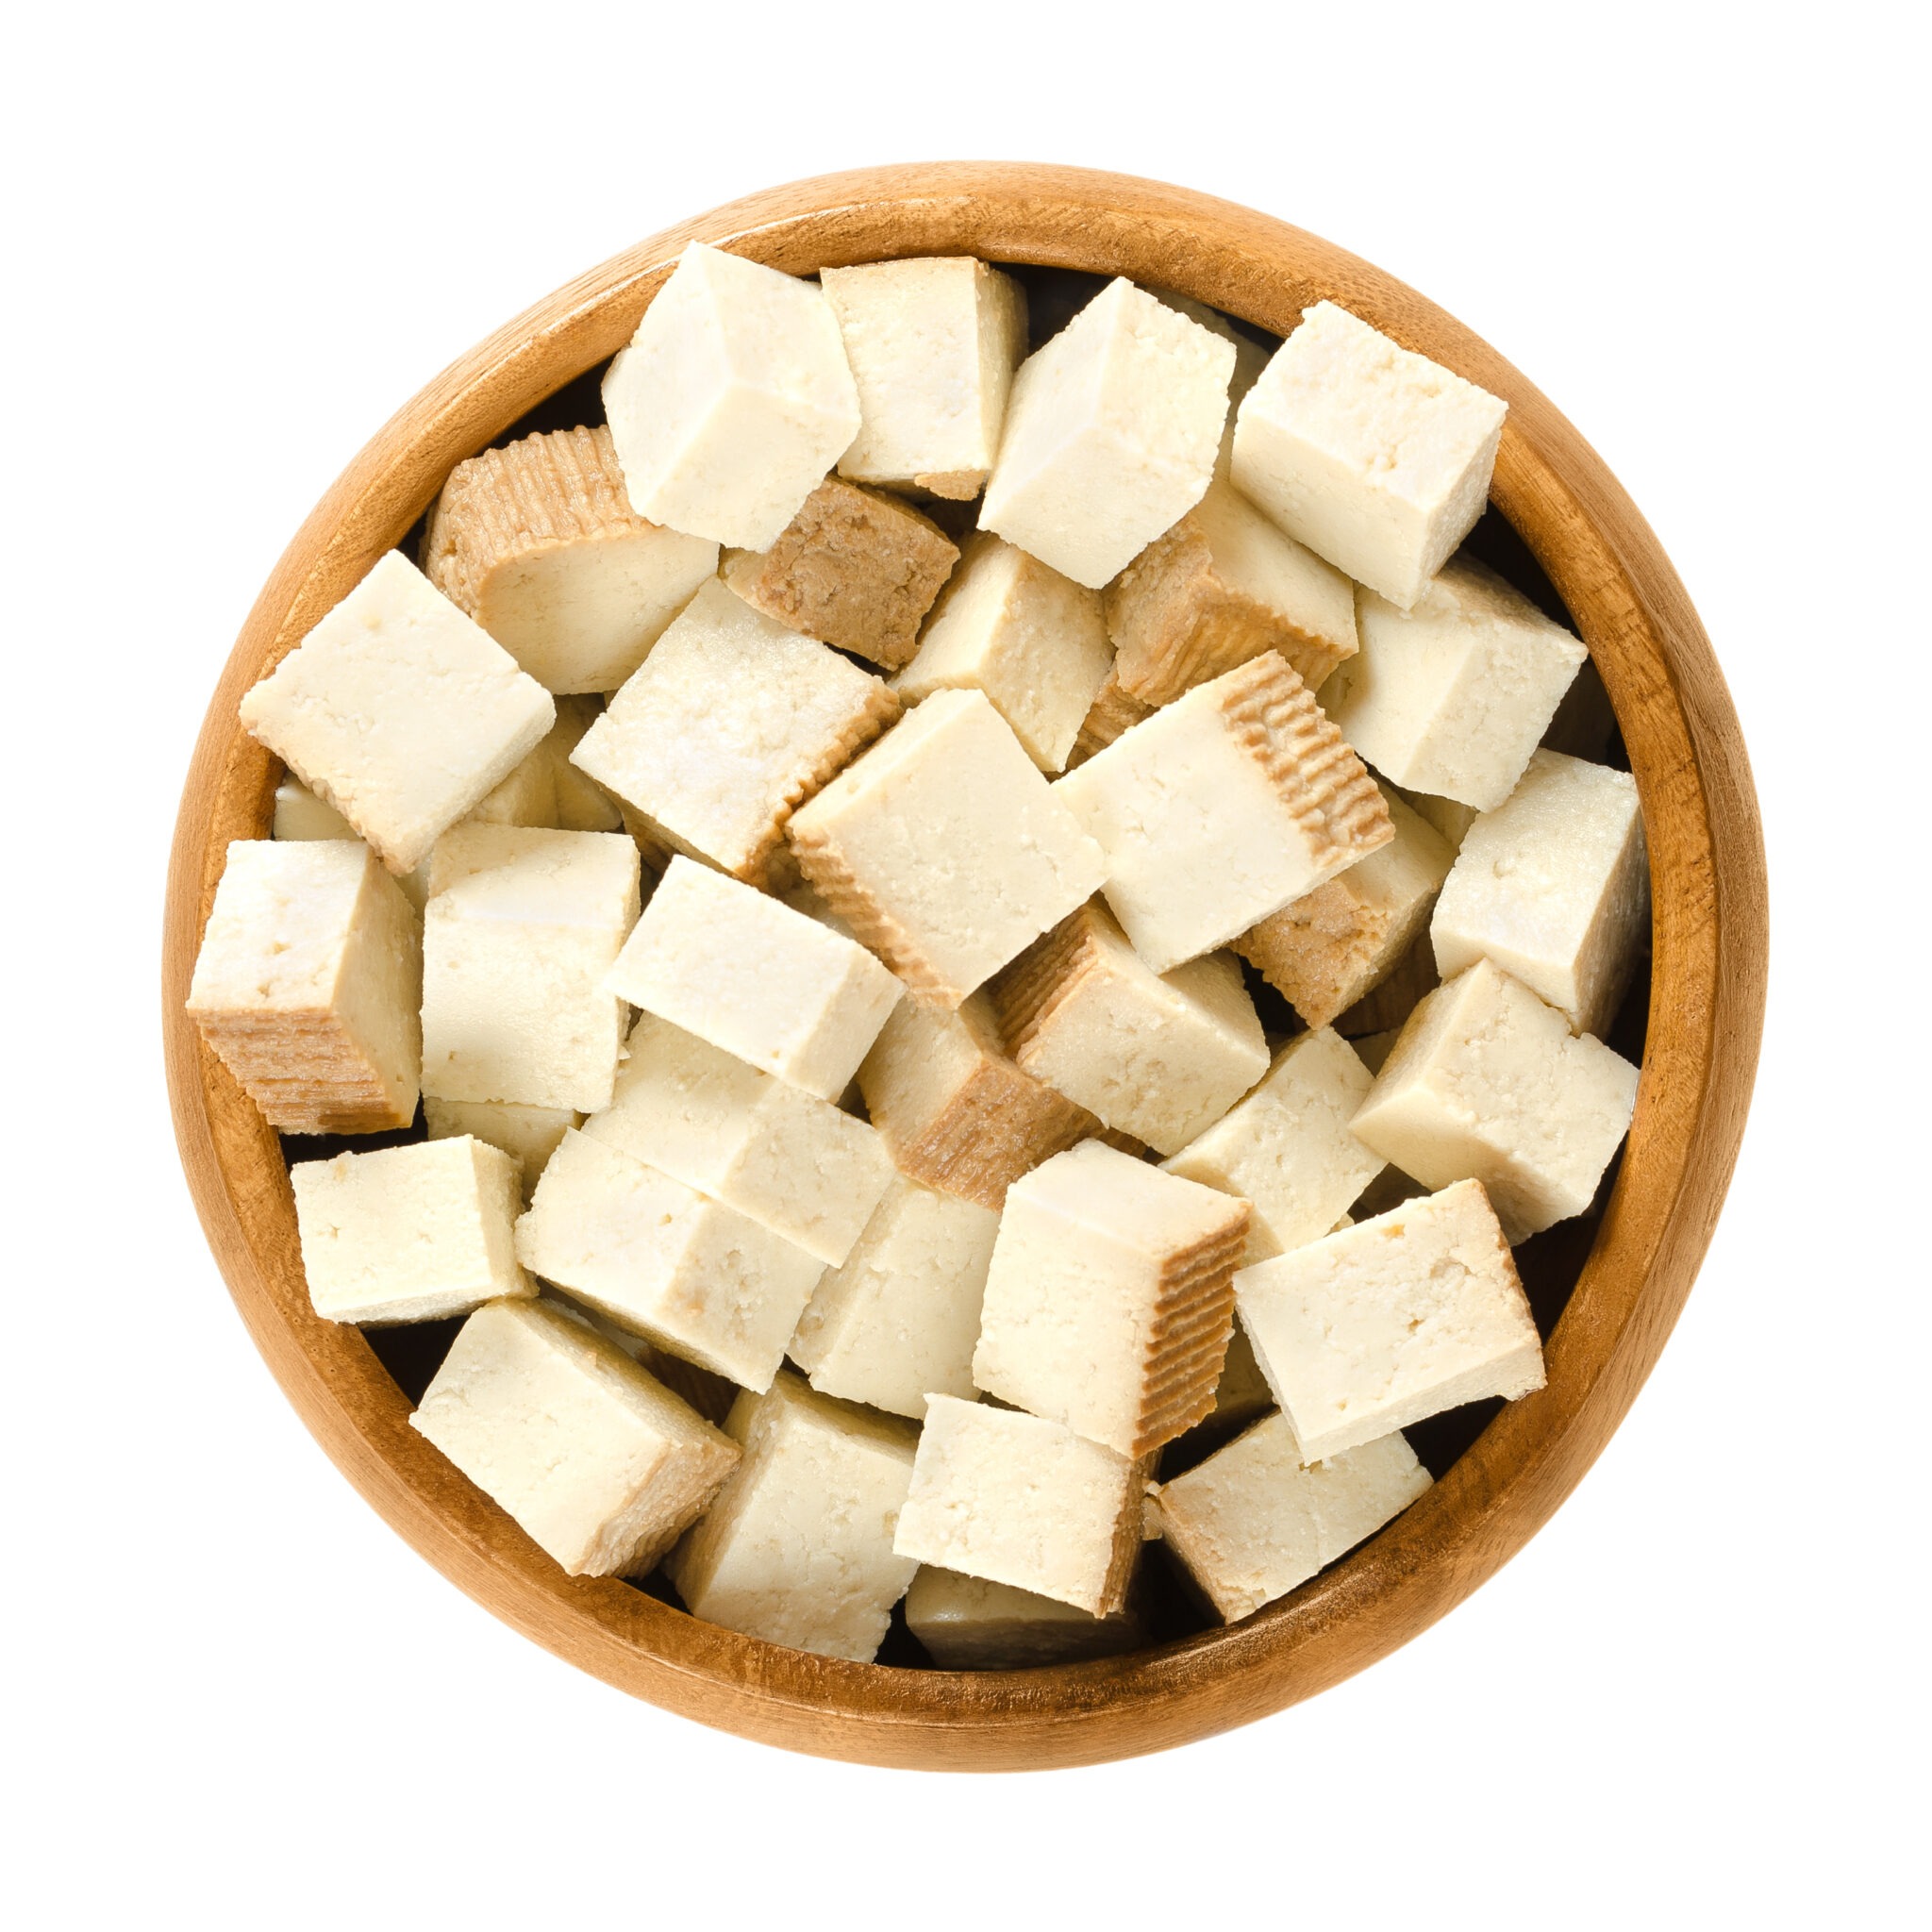 Tofu health benefits